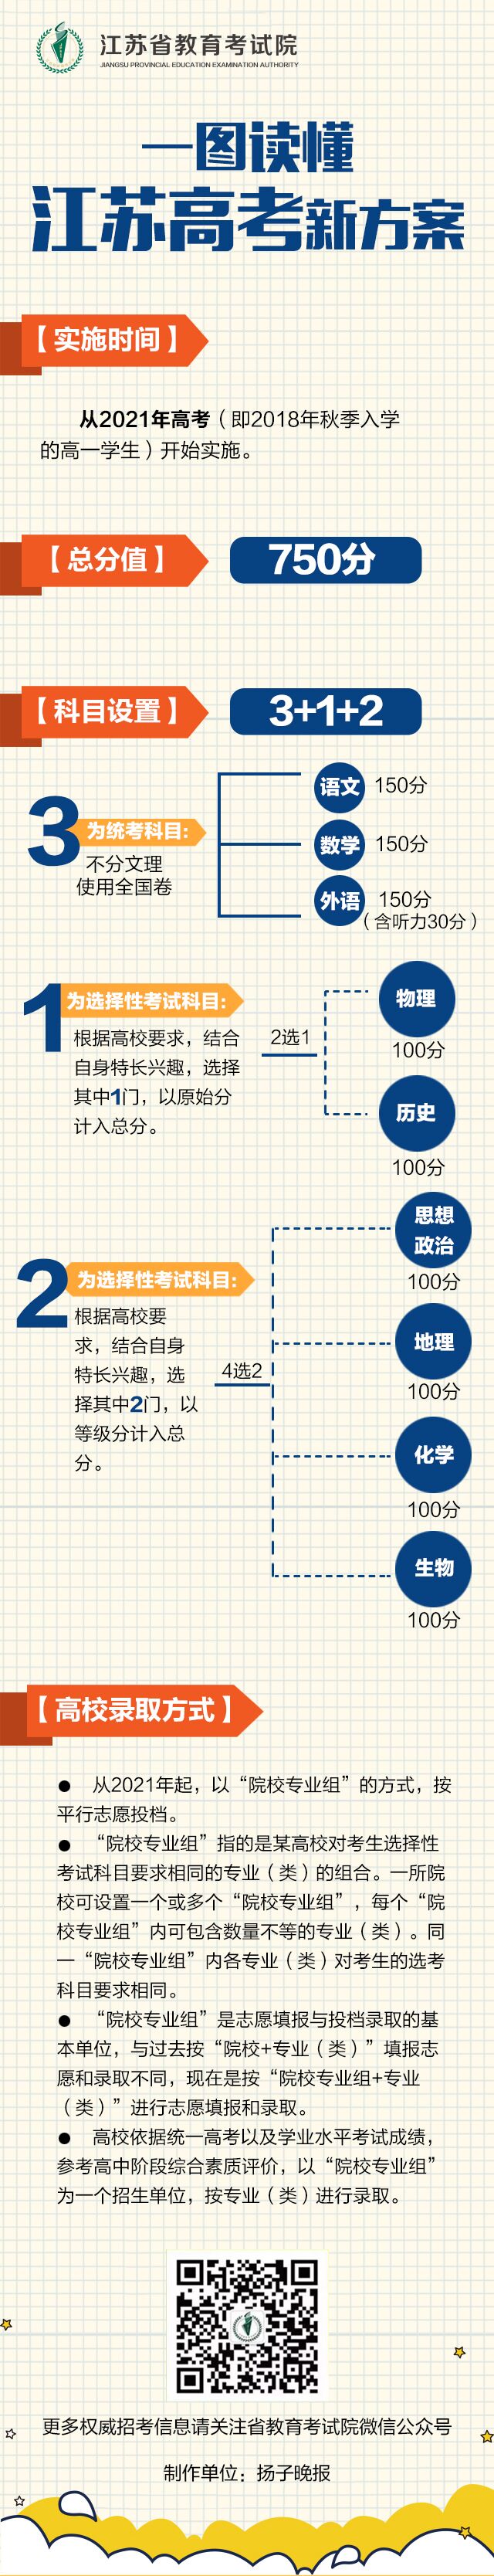 一图读懂2021年江苏高考新方案  江苏新高考 第1张